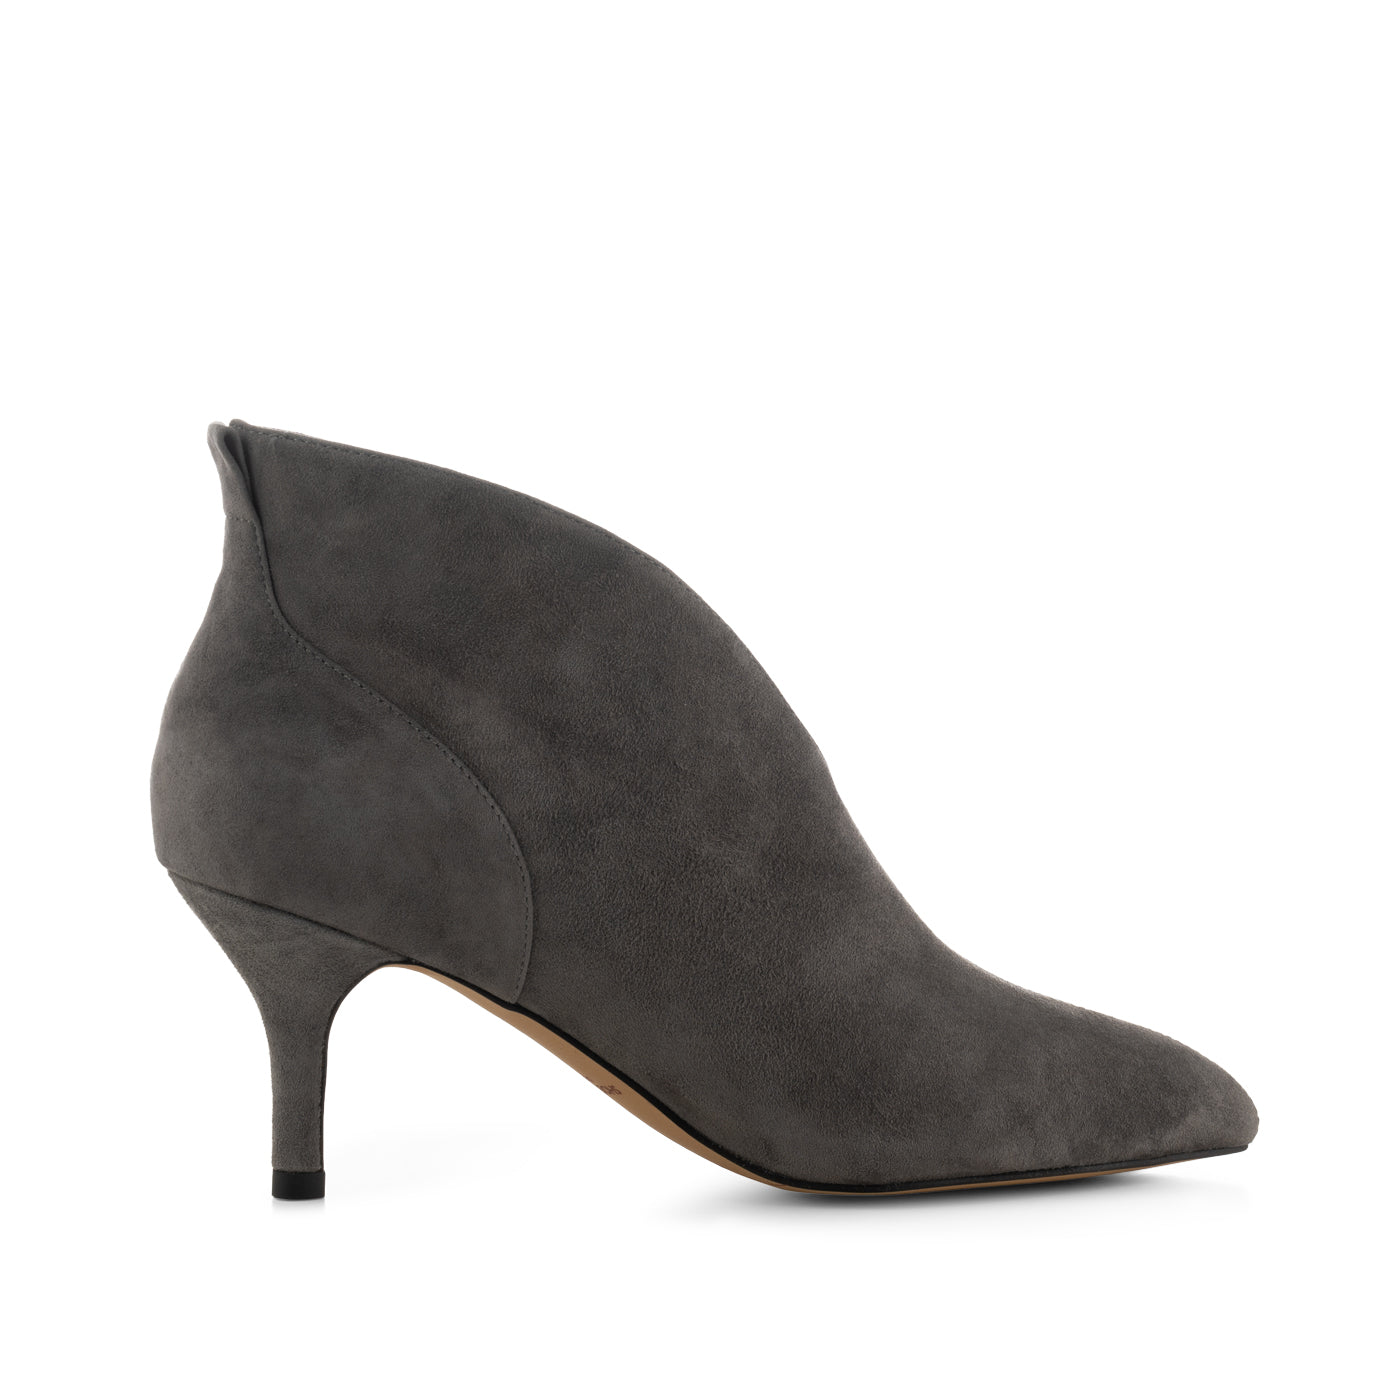 Buy Women Grey Casual Heels Online - 494728 | Allen Solly